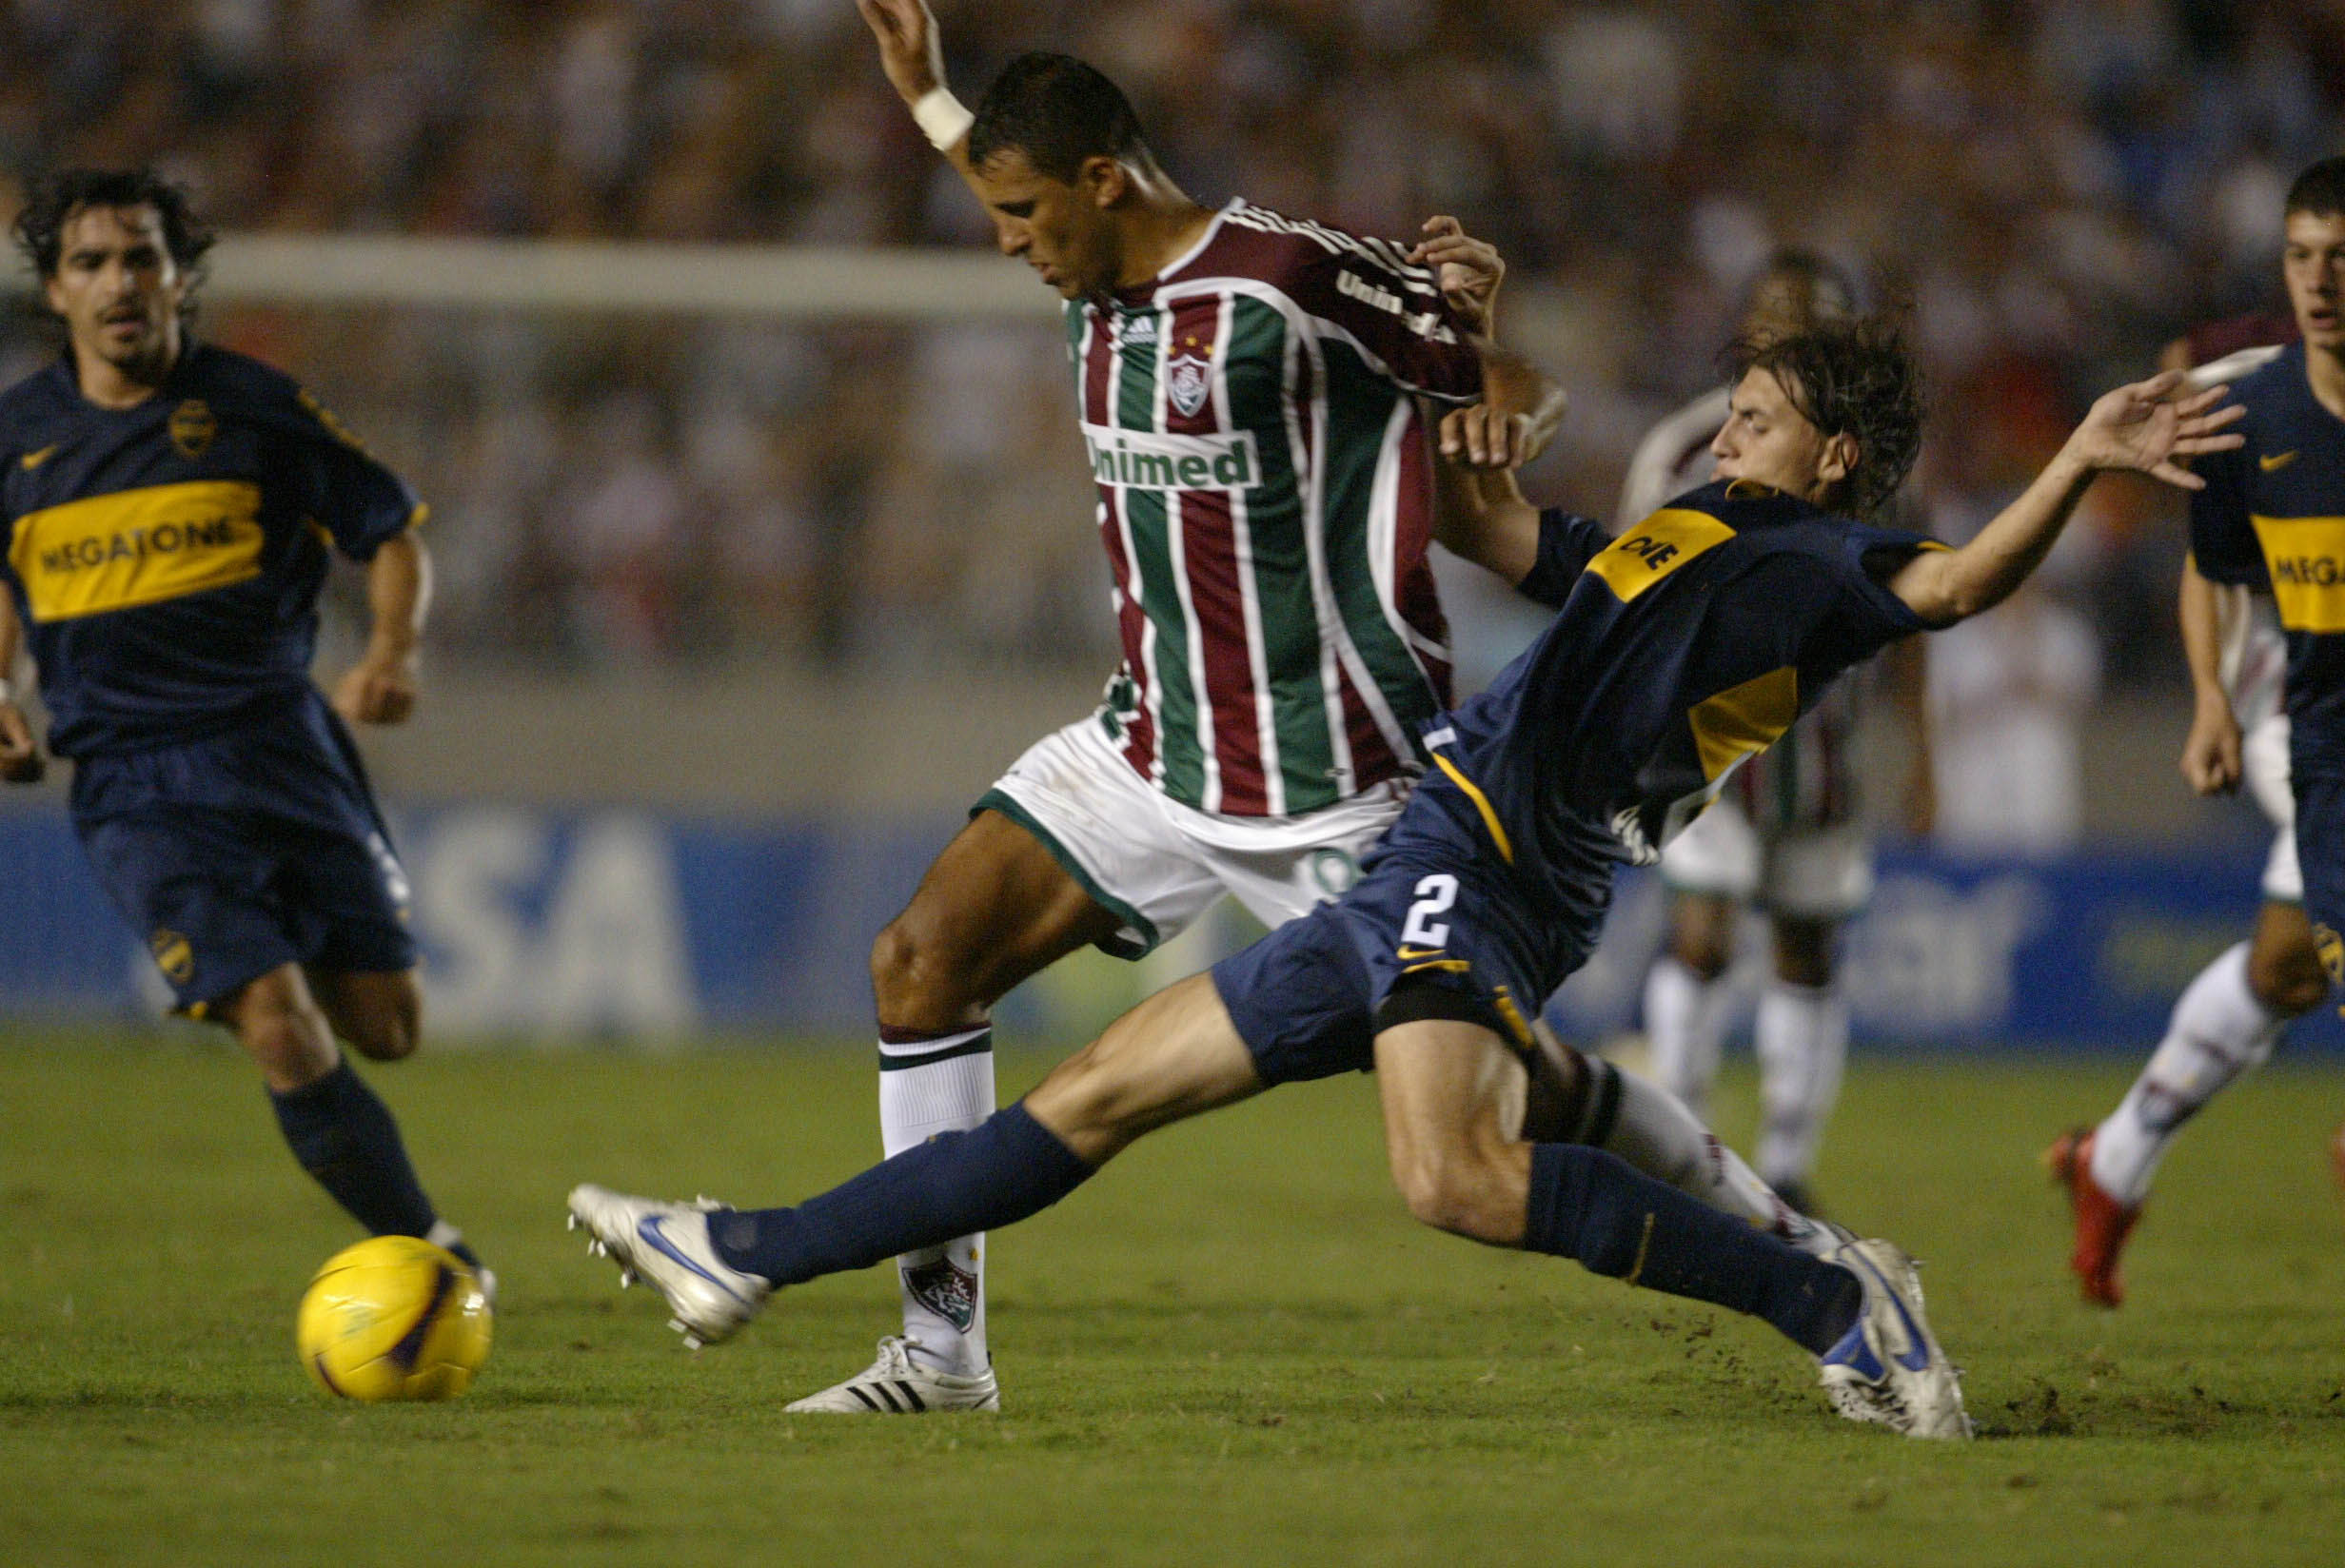 Veja os melhores momentos de Fluminense 2 x 1 Boca Juniors